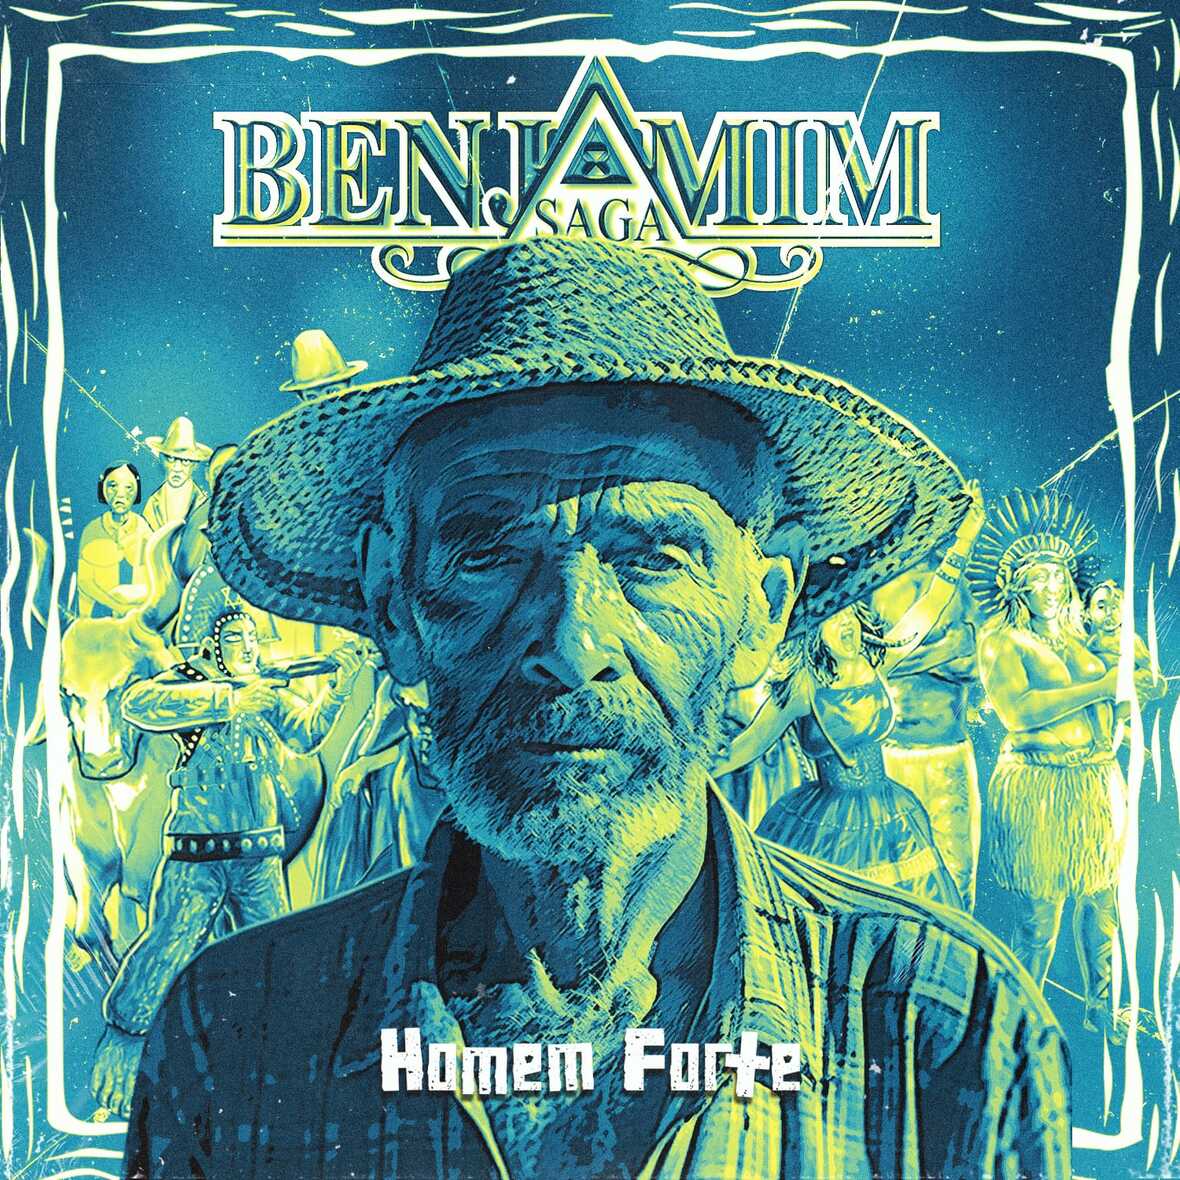 Benjamim Saga lança ‘Homem Forte’, sobre a força e a resiliência humana